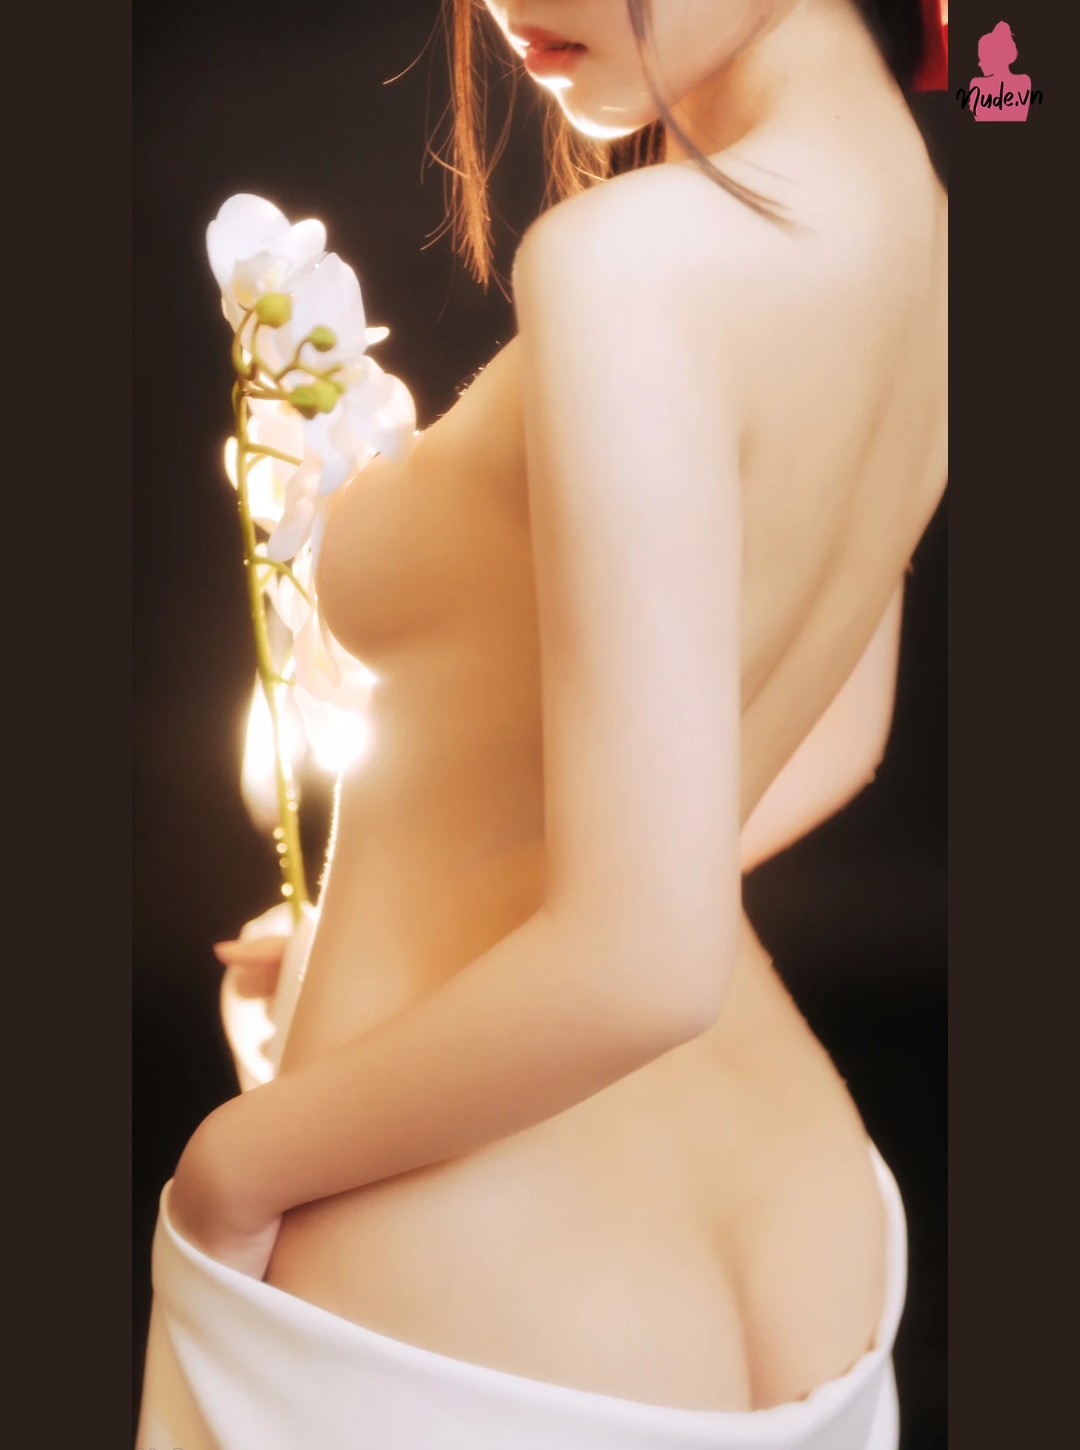 Ngắm nhìn thân hình hoàn hảo trong ảnh nude nghuật mới nhất của Coser 'Mèo Ngốc'